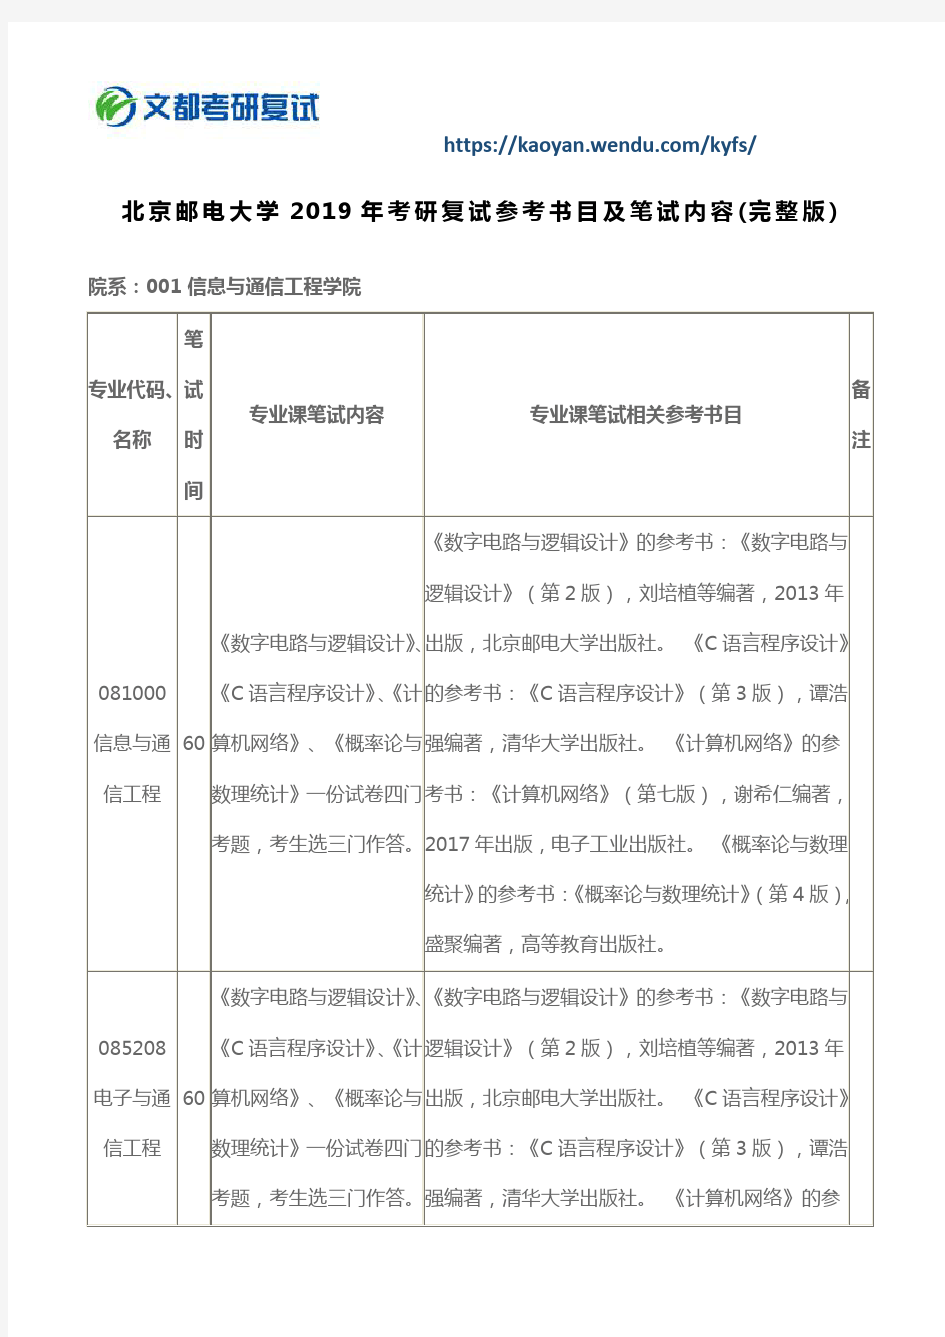 北京邮电大学2019年考研复试参考书目及笔试内容